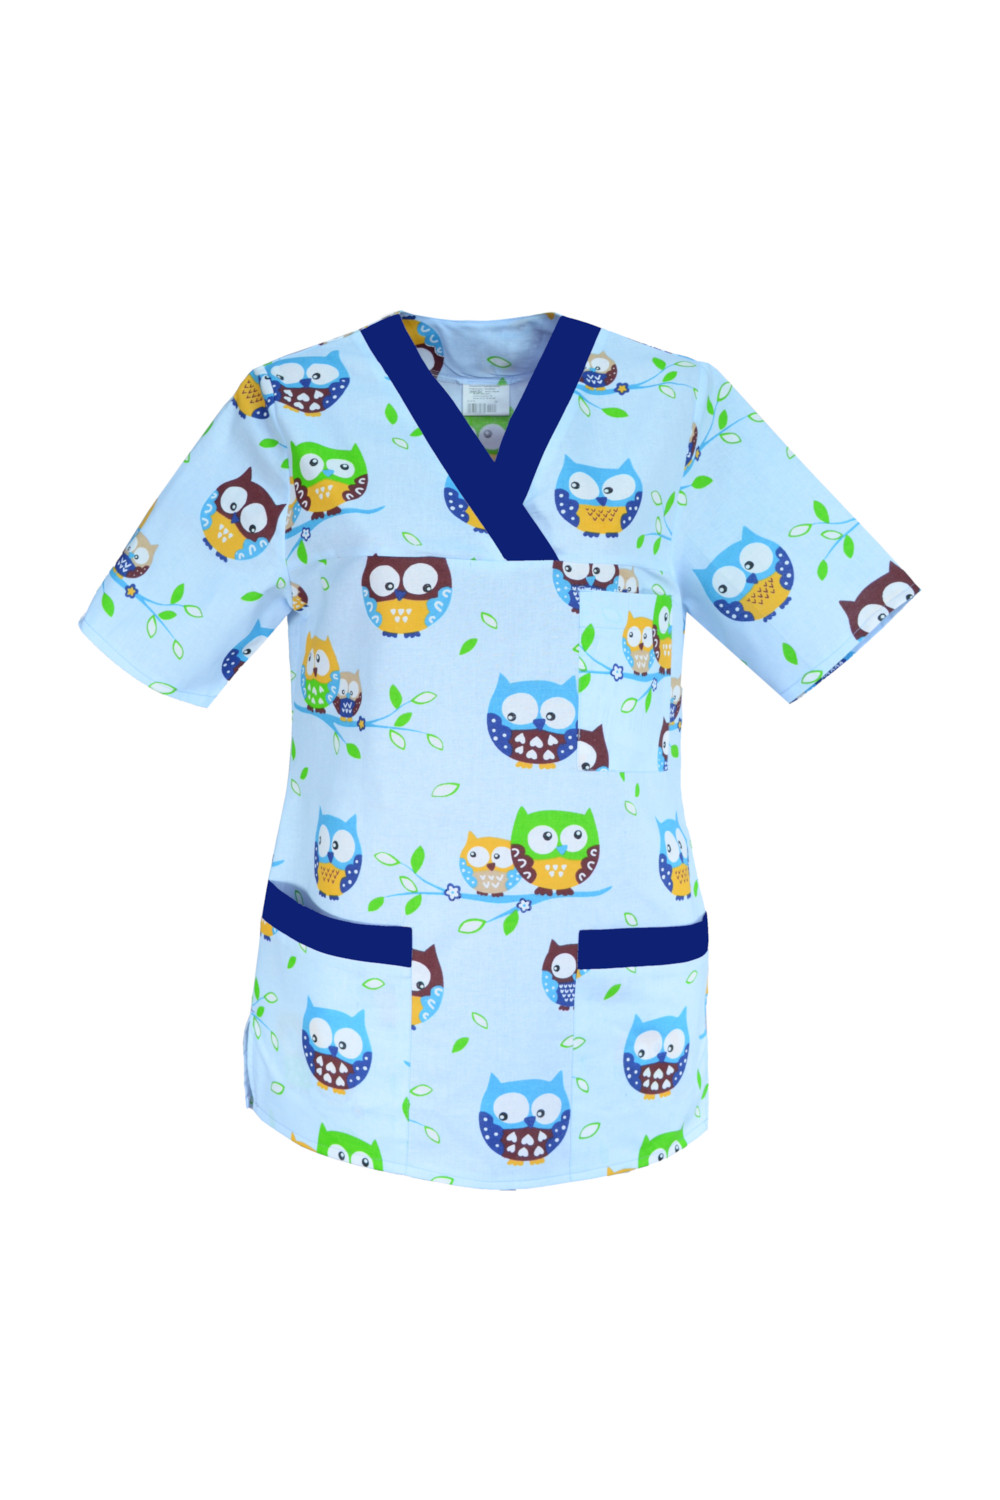 M-074G bluza medyczna damska we wzorki, kolorowa. Wzór sowy z szafirem